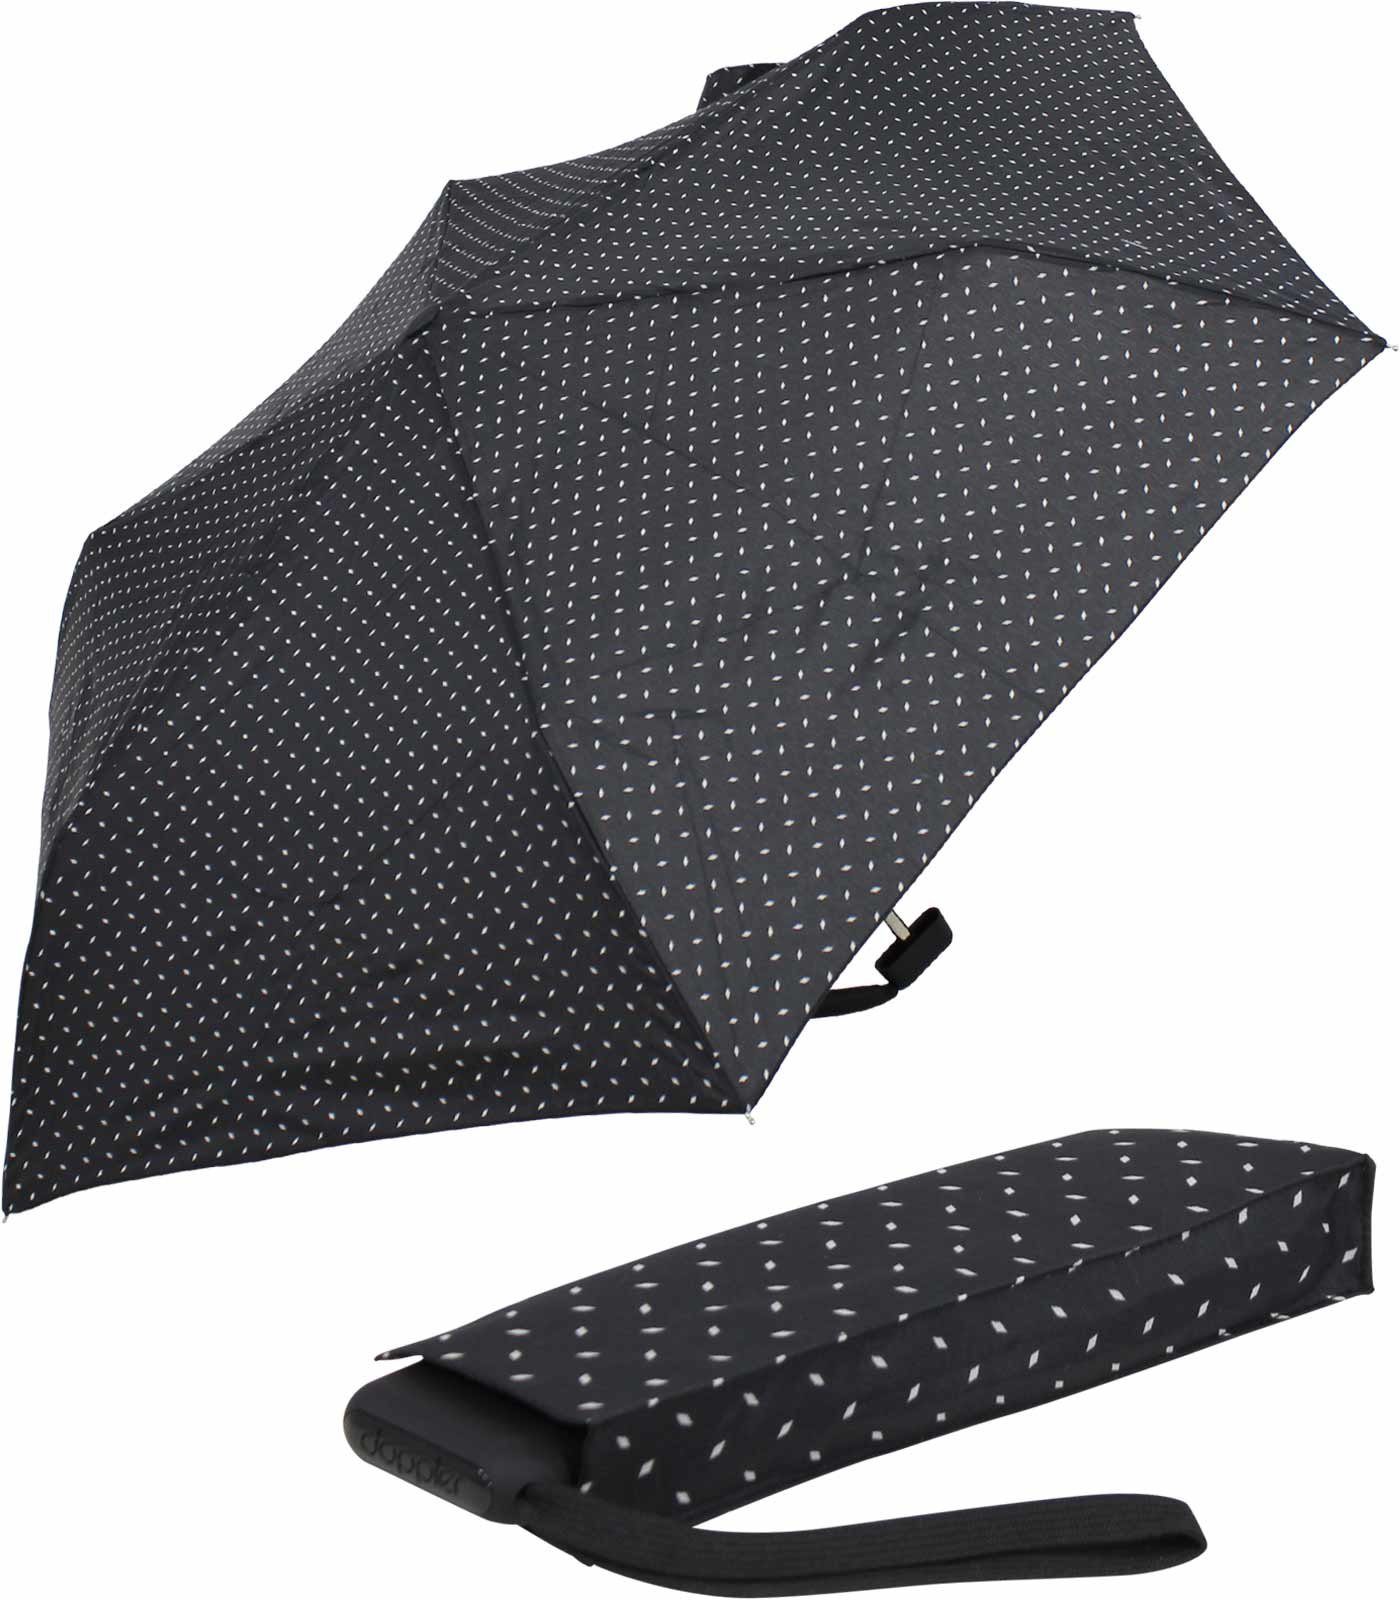 doppler® Taschenregenschirm ein leichter und flacher Schirm für jede Tasche, dieser treue Begleiter findet überall Platz schwarz